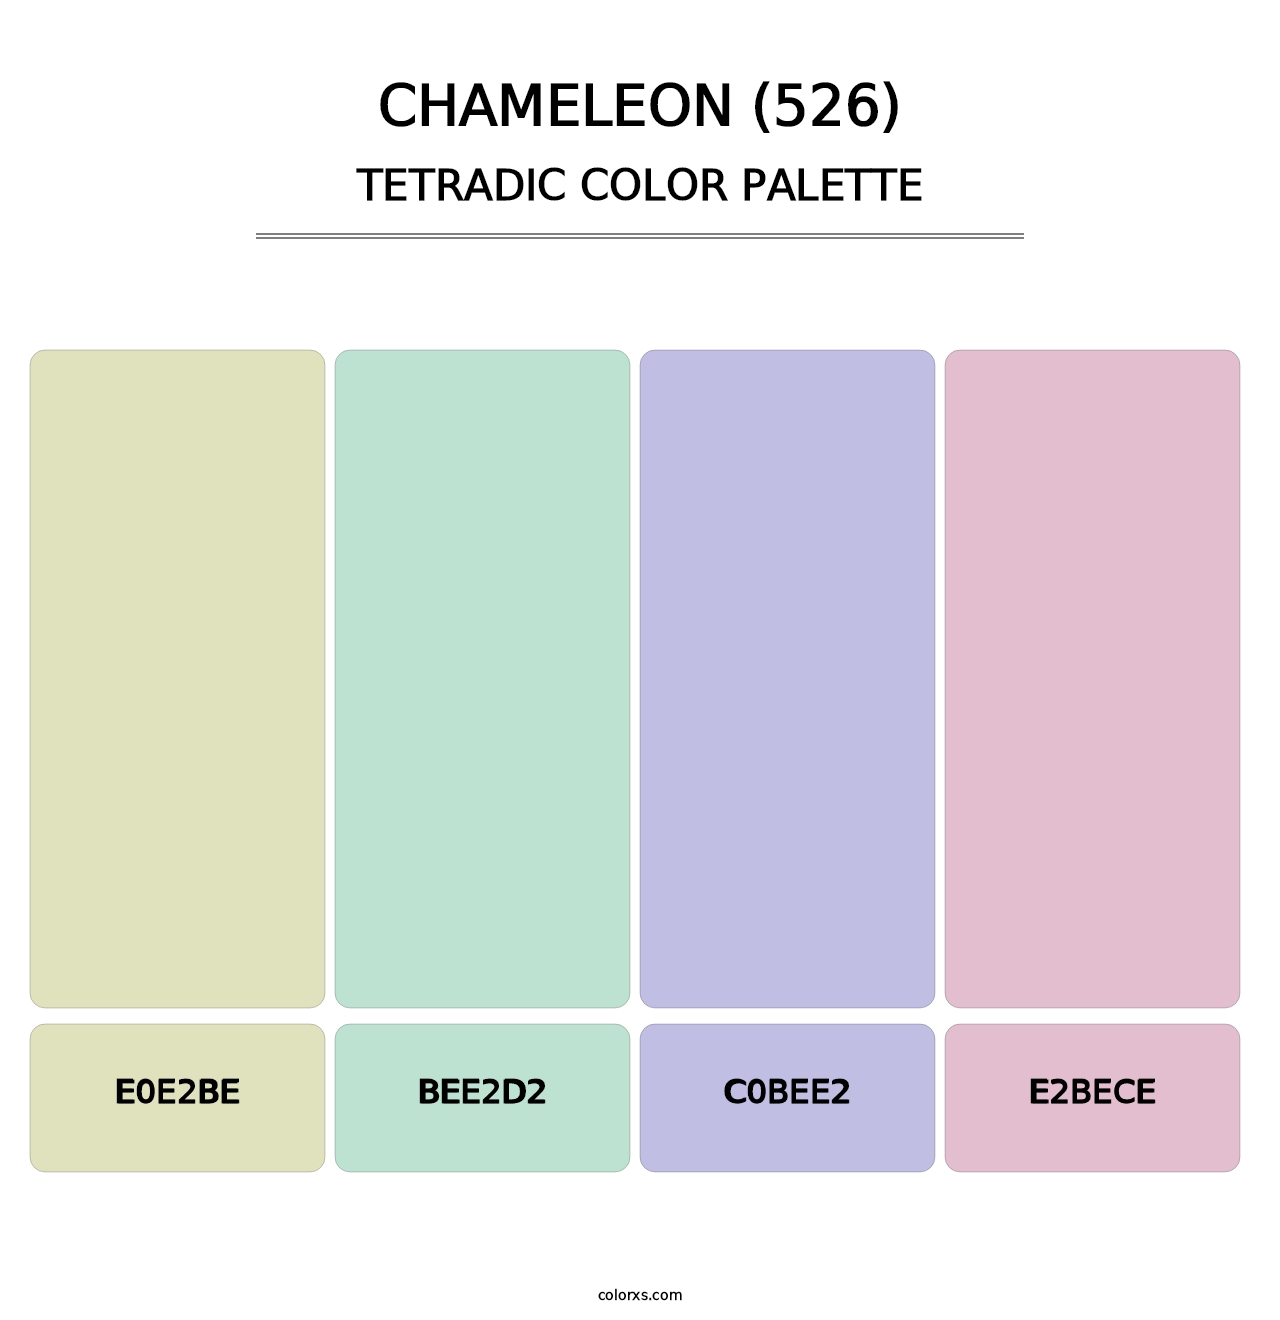 Chameleon (526) - Tetradic Color Palette